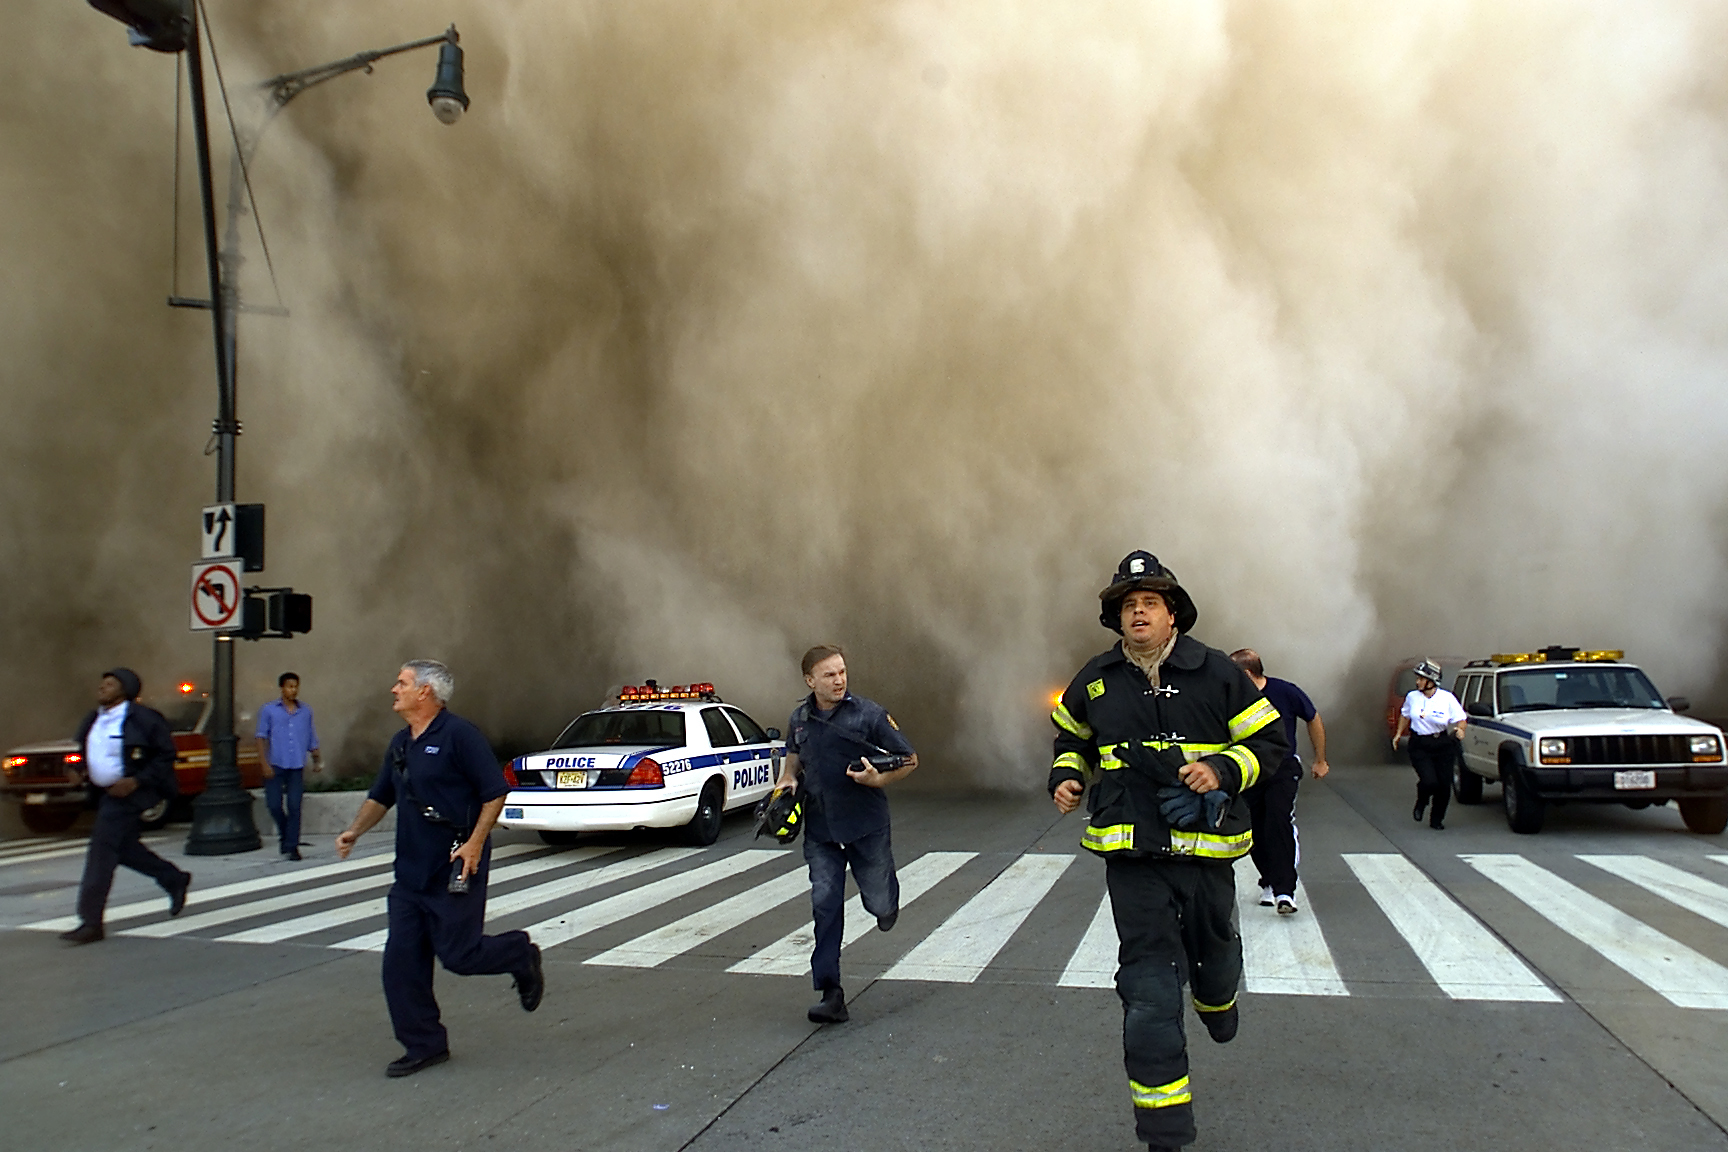 11 июня 2013. Башни-Близнецы 11 сентября 2001. Теракт 11 сентября 2001 года башни Близнецы.